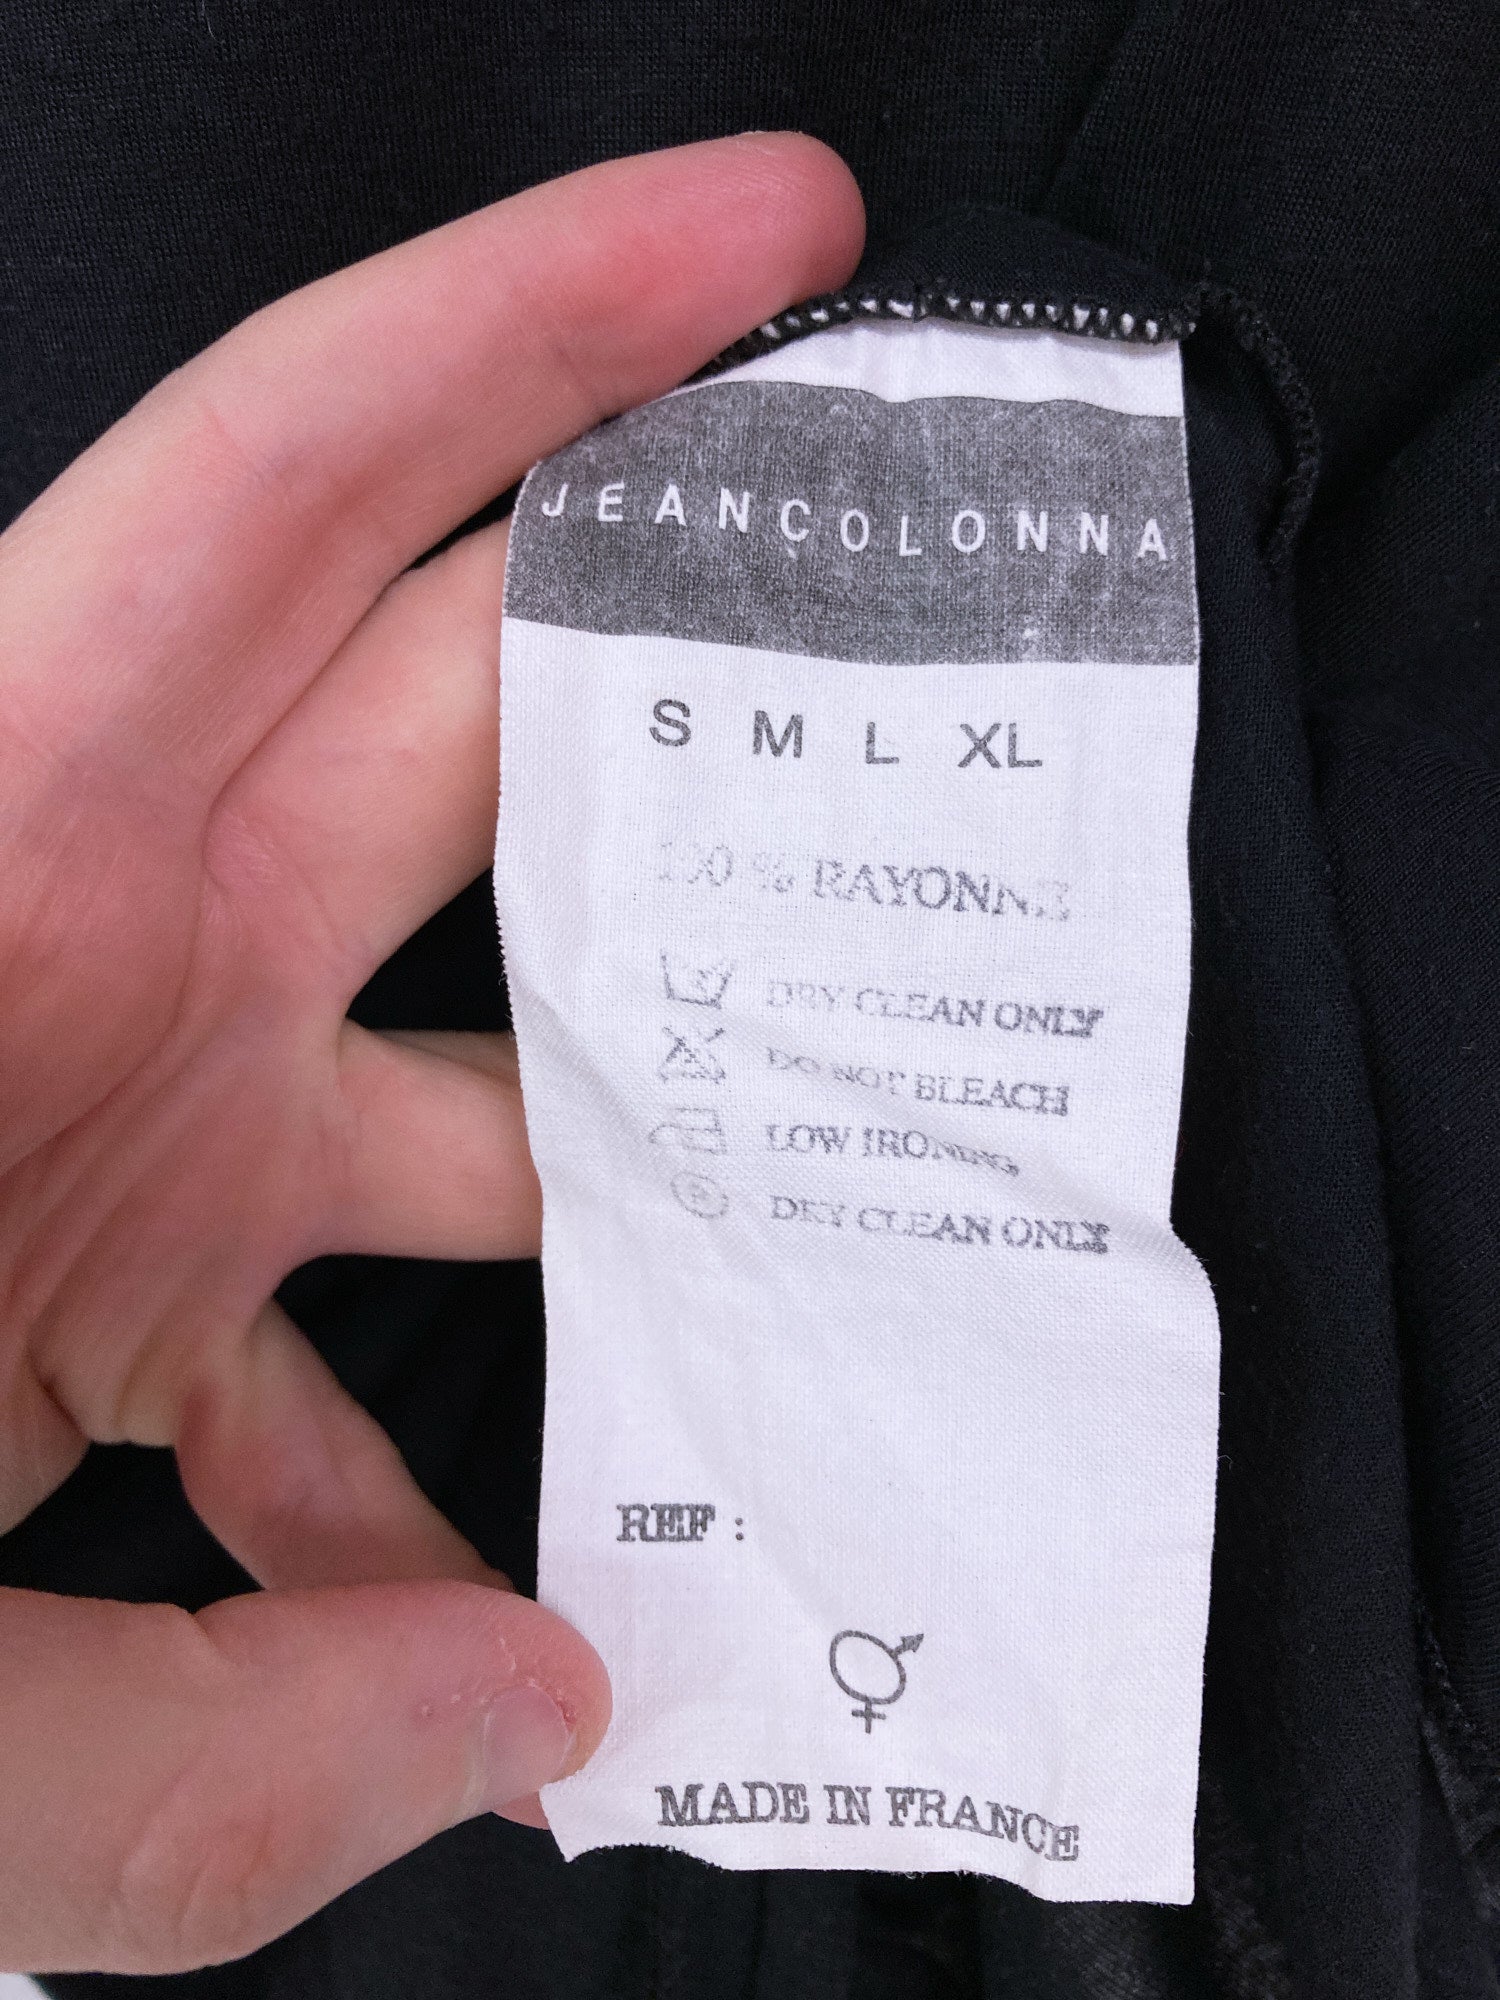 Jean Colonna black rayon jersey v-neck t-shirt